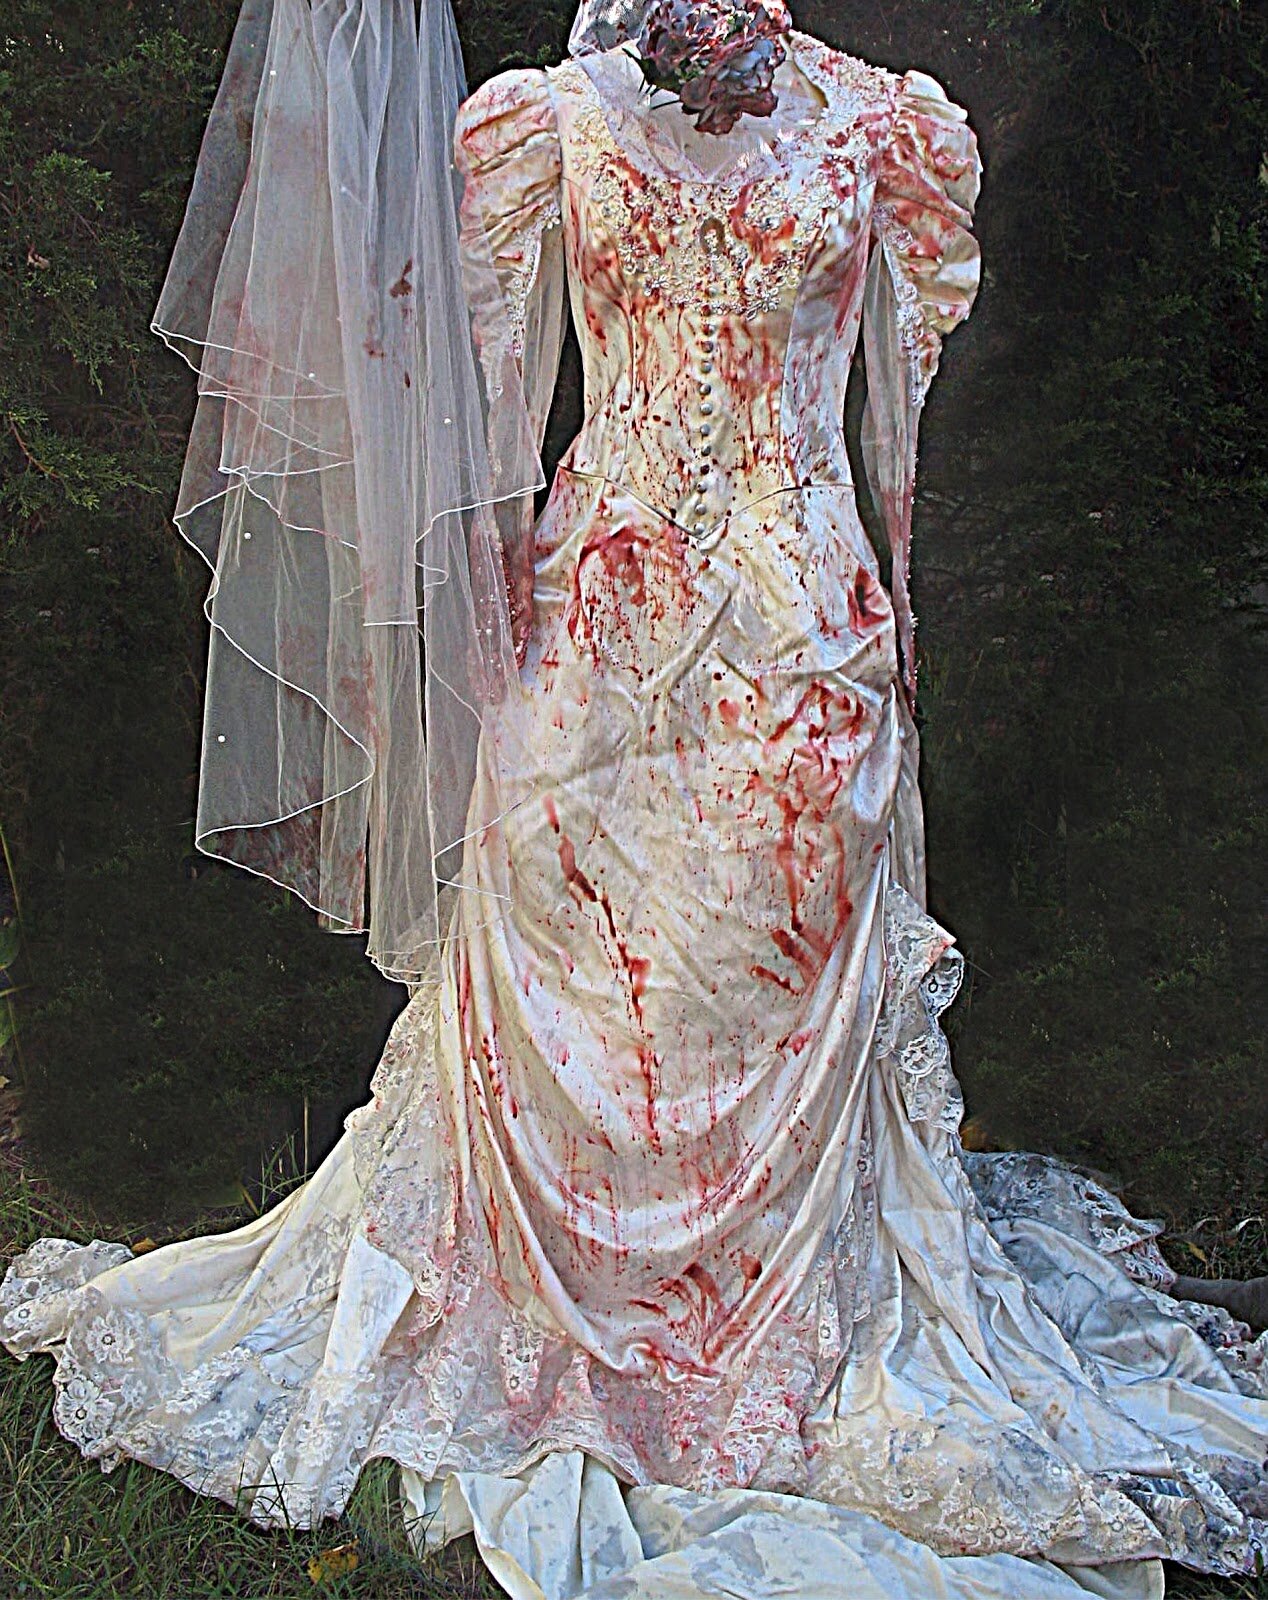 Zombie wedding dresses Photo - 1